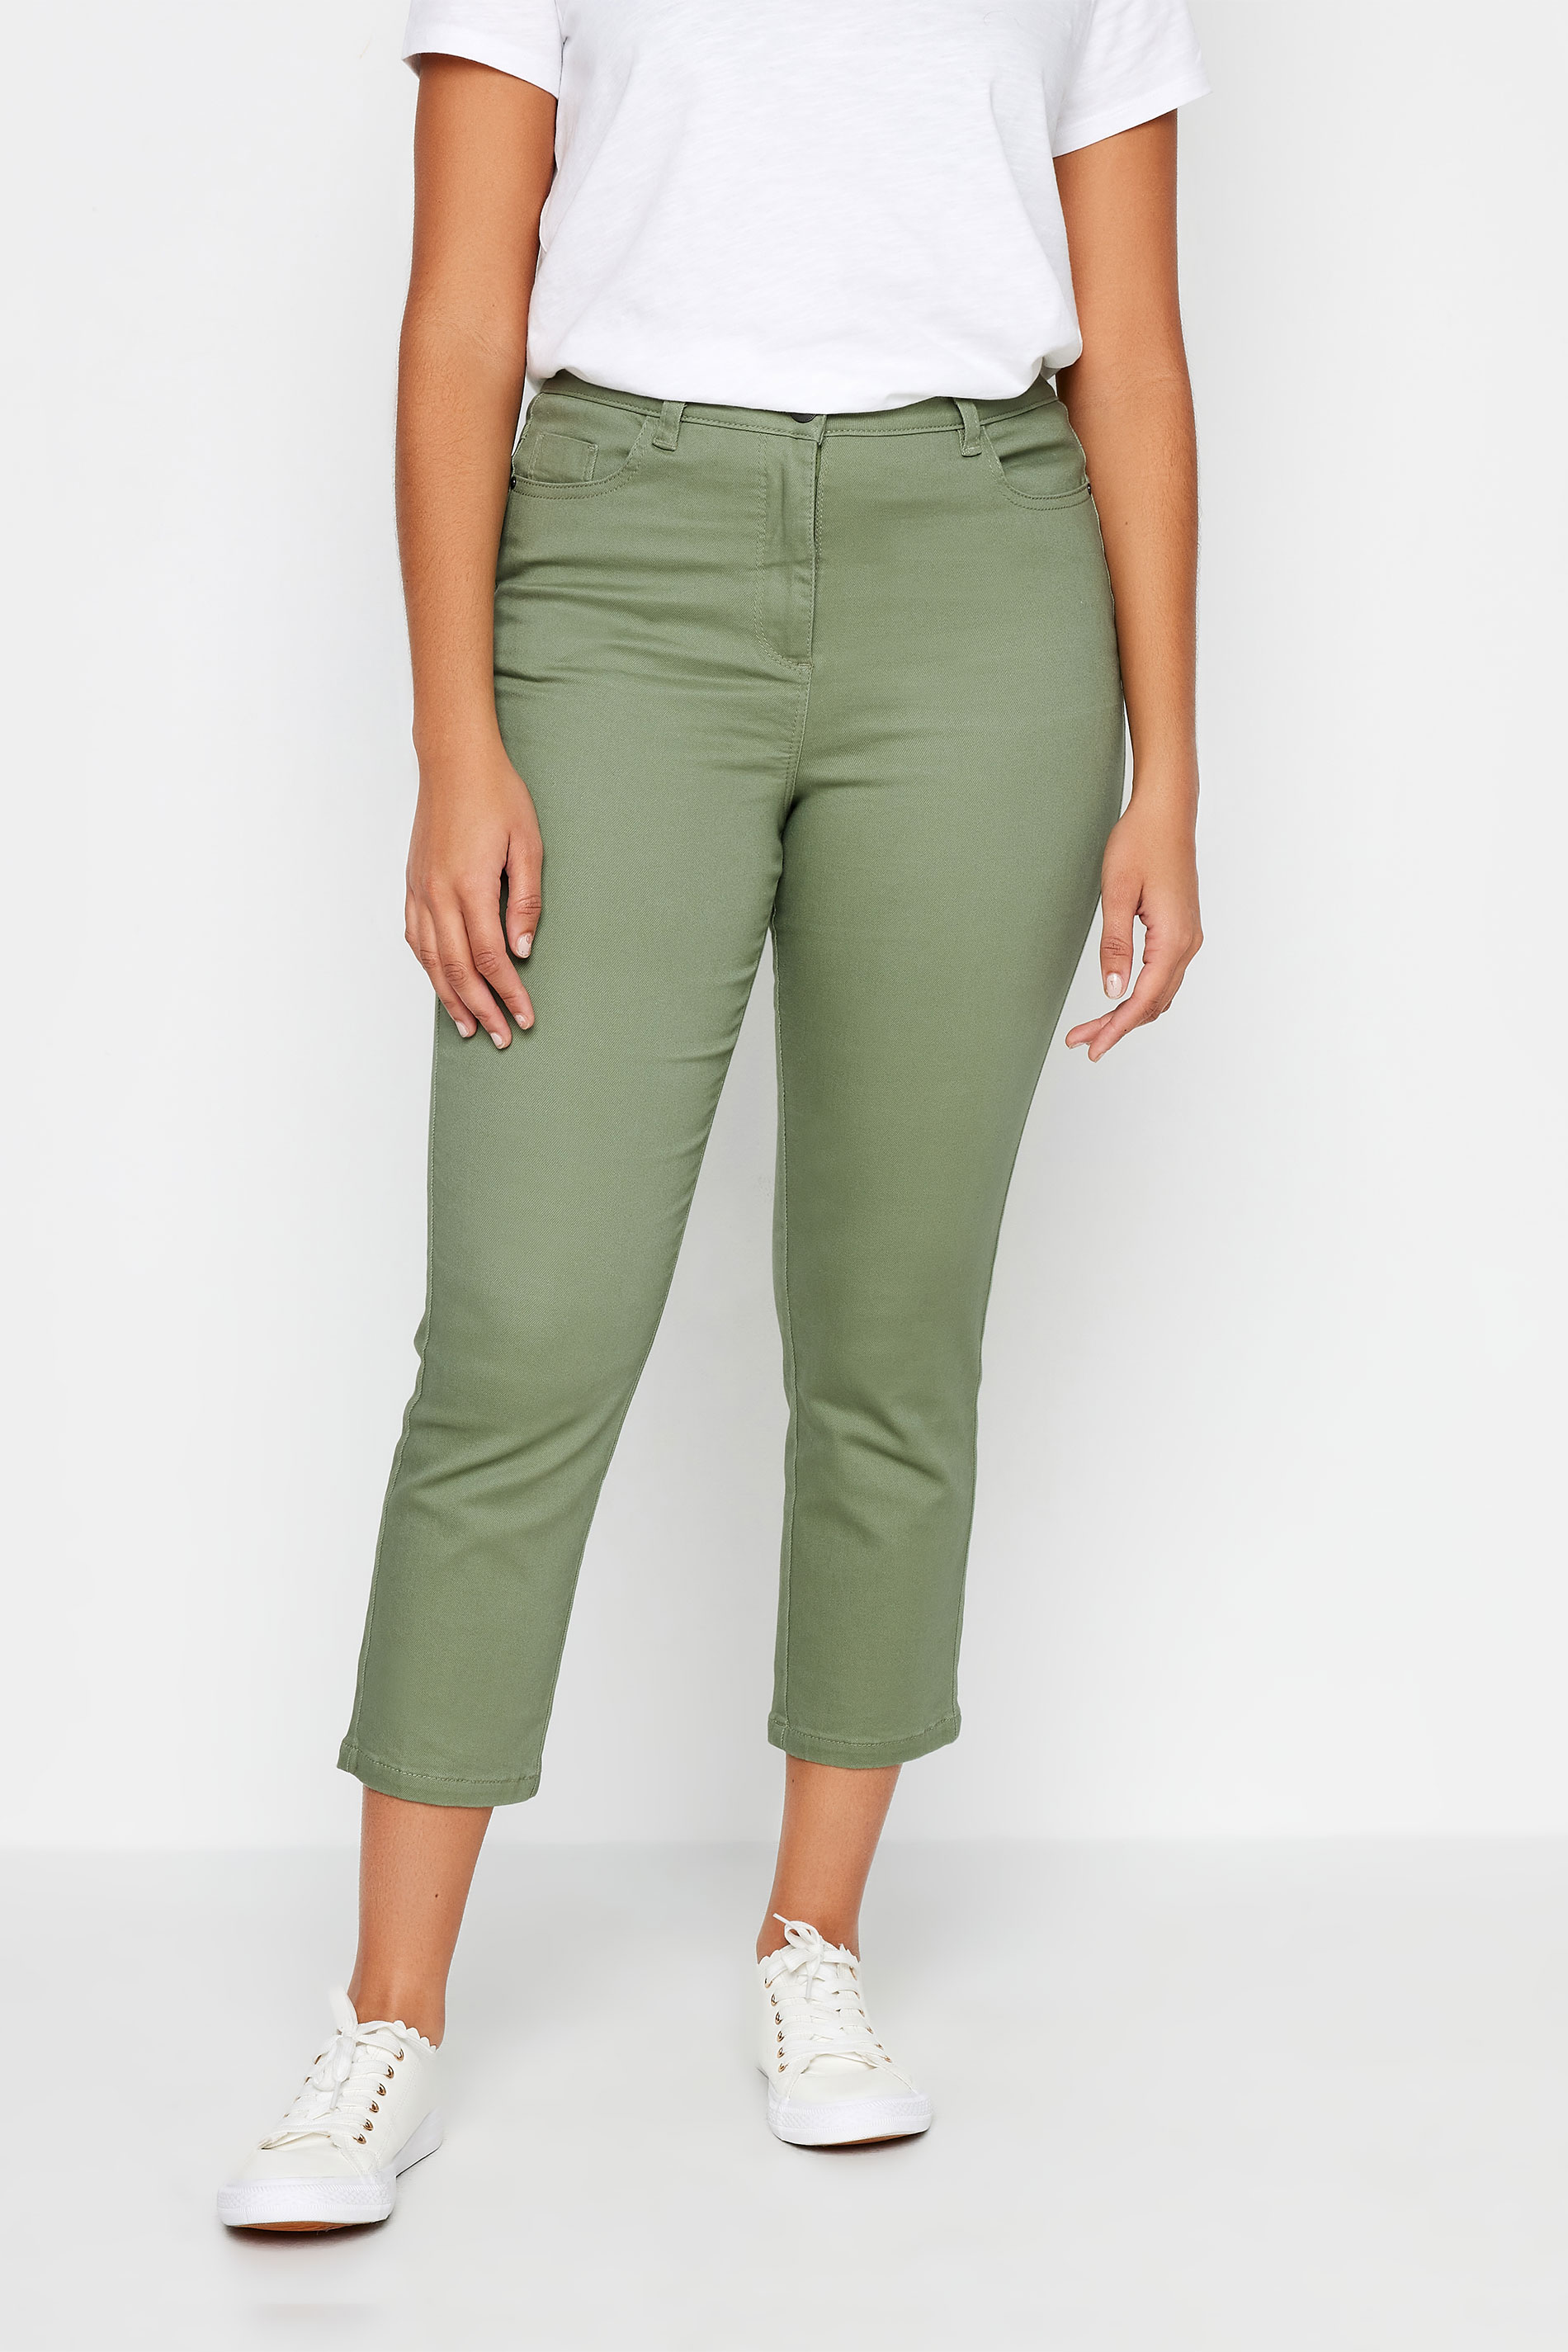 M&Co Khaki Green Cropped Jeans | M&Co 2